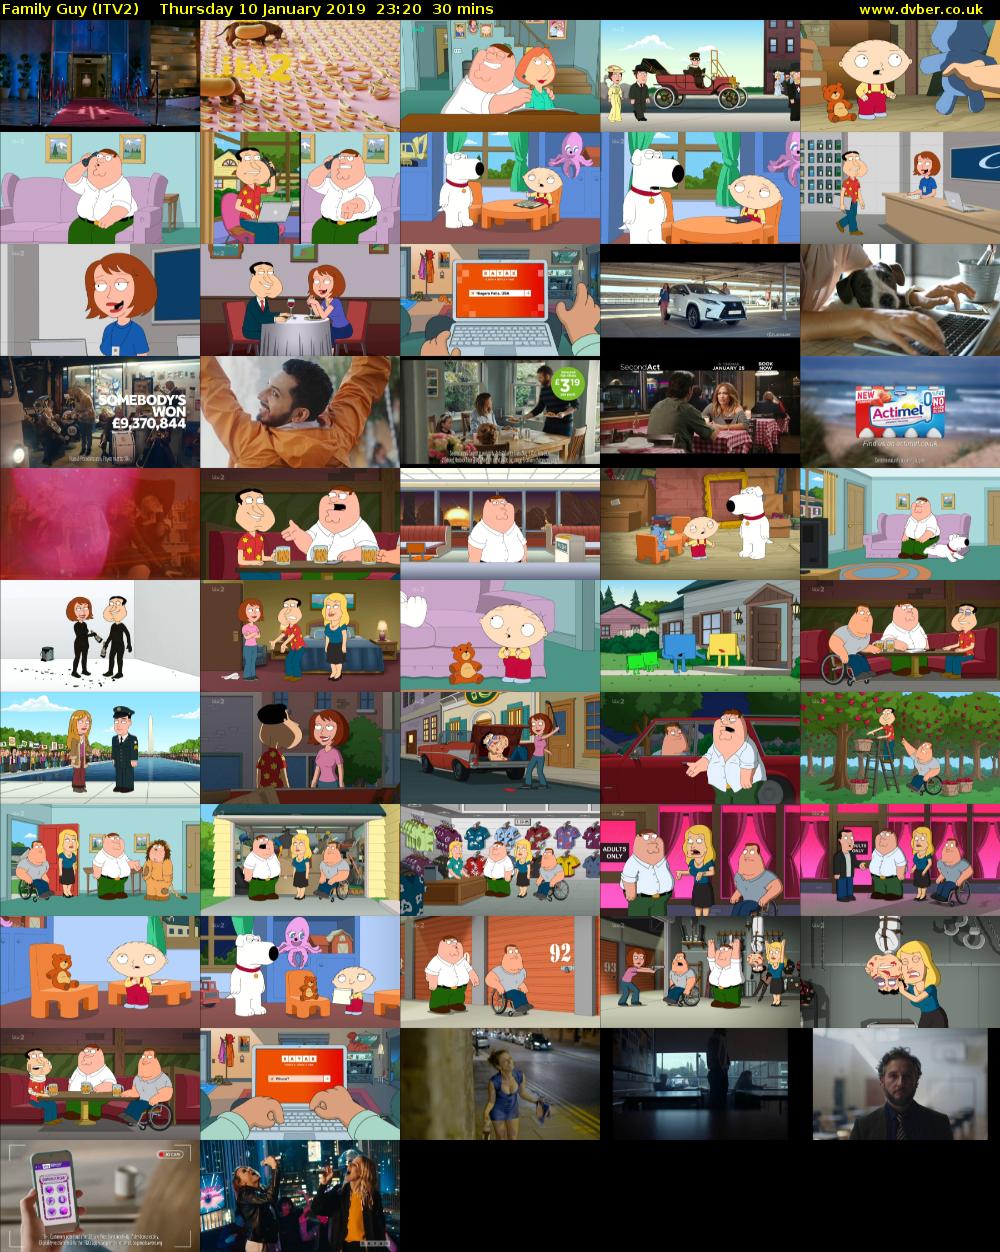 Family Guy (ITV2) Thursday 10 January 2019 23:20 - 23:50